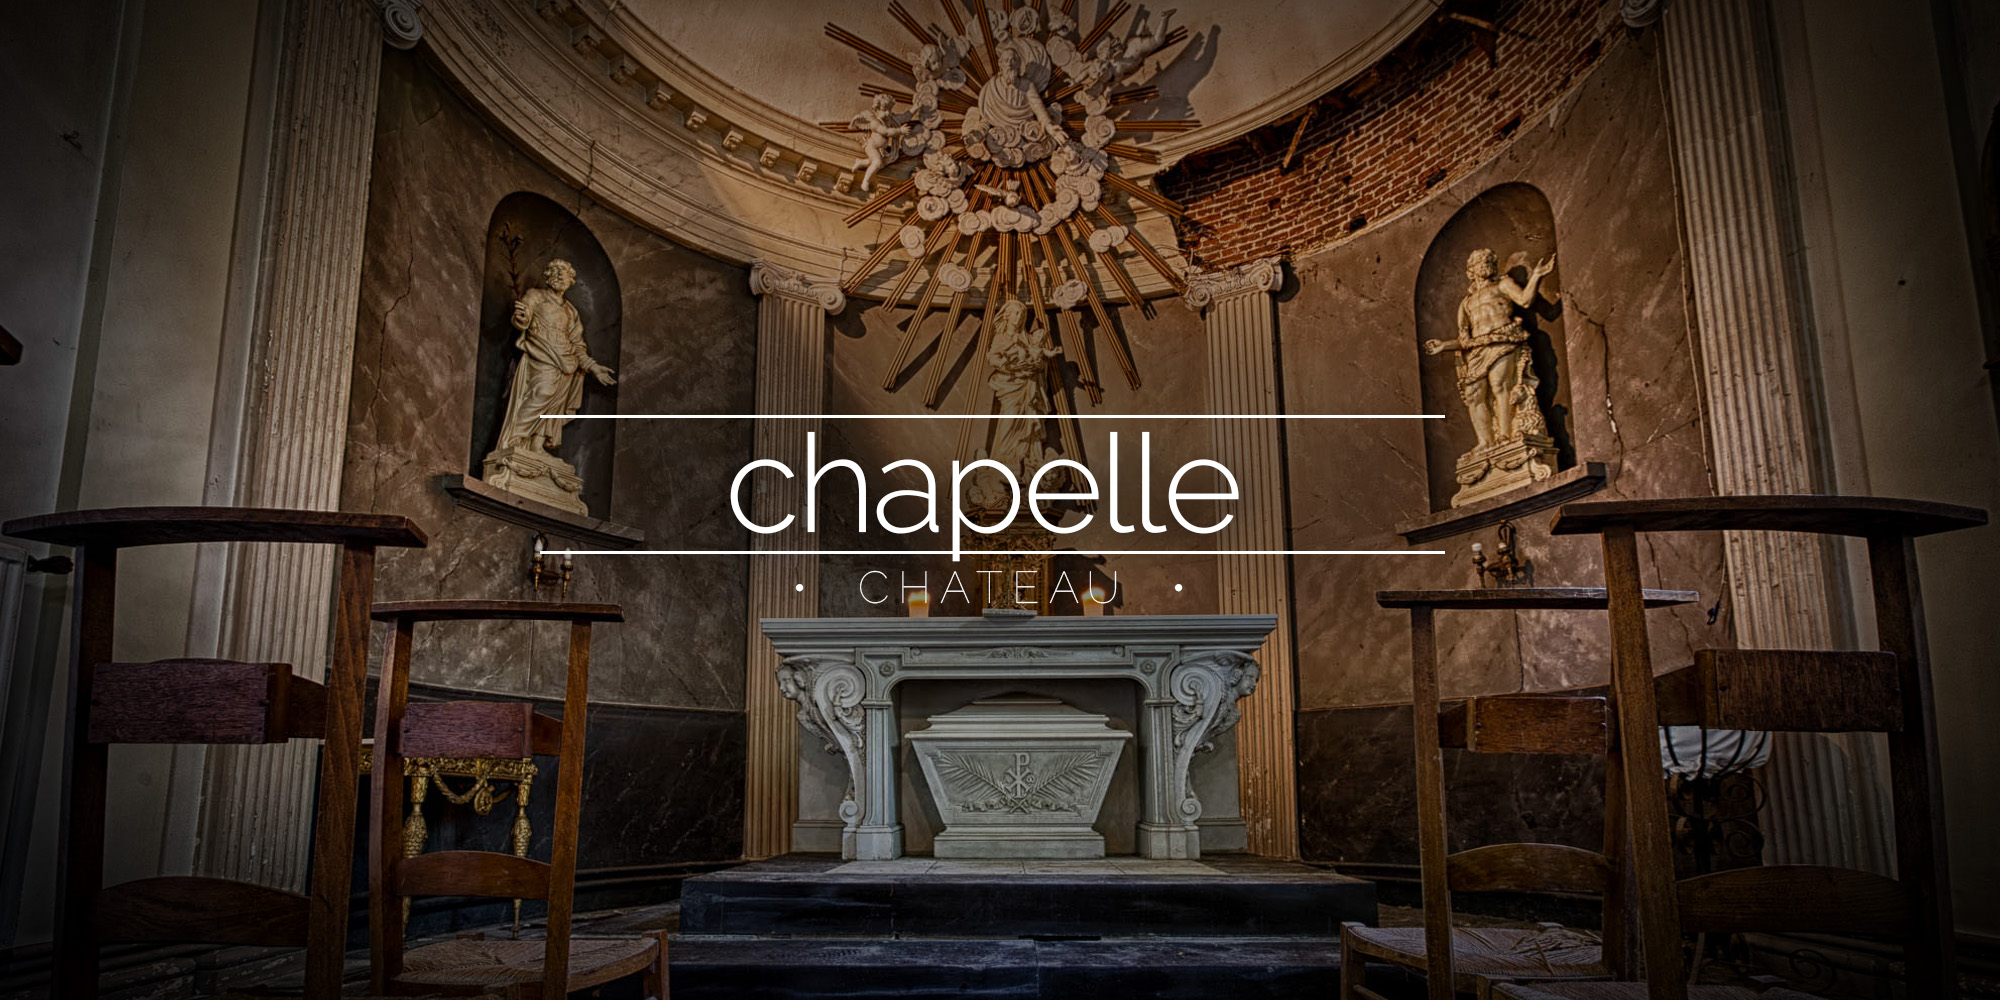 Chateau de la Chapelle, Belgium